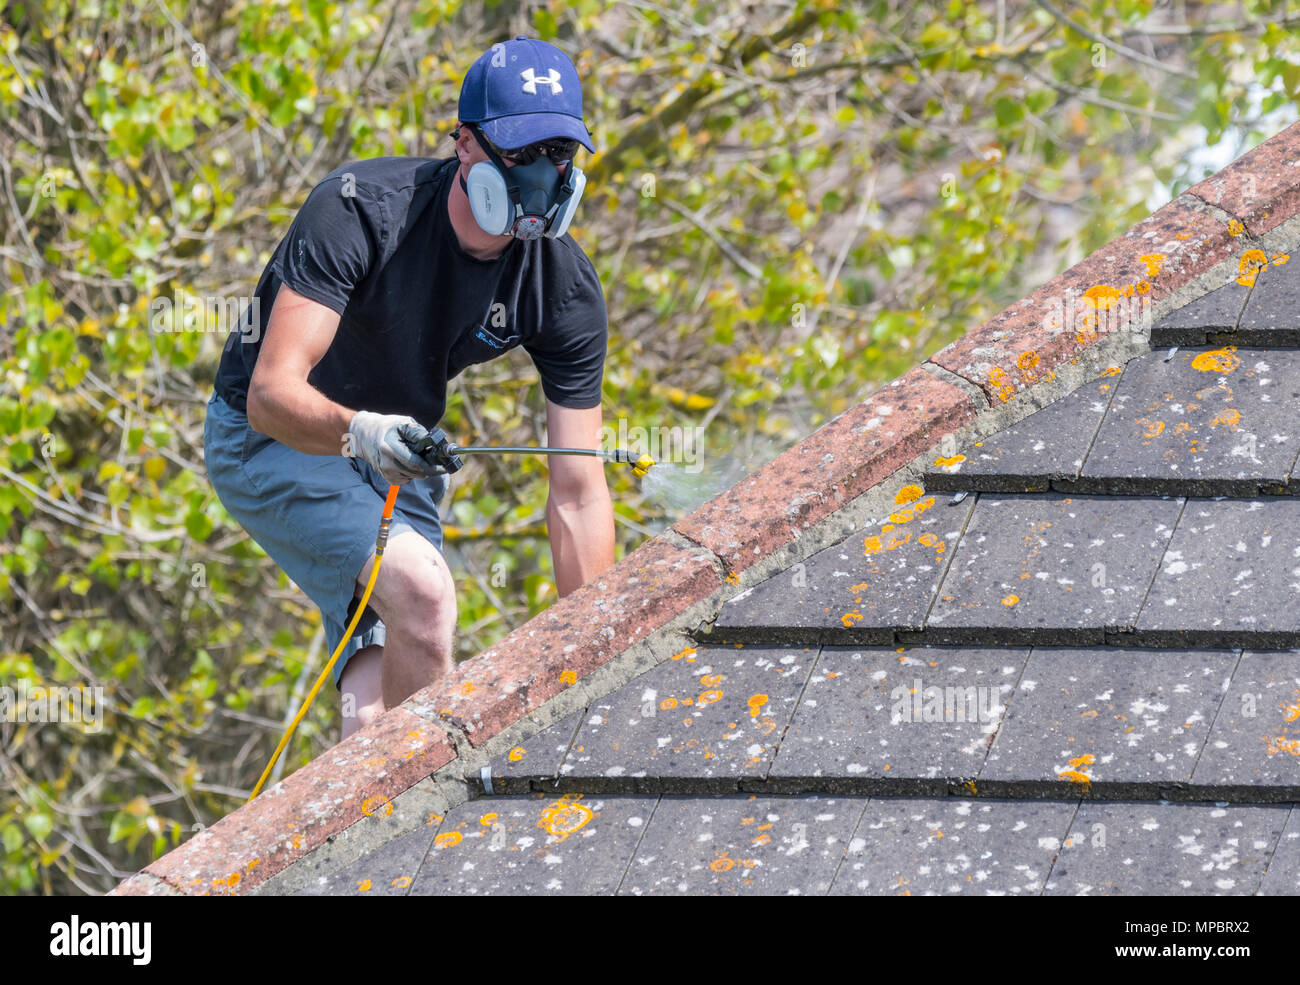 Männliche Arbeiter auf einem Haus Spritzen auf dem Dach Das Dach, das Tragen von Atemschutz in Großbritannien. Stockfoto